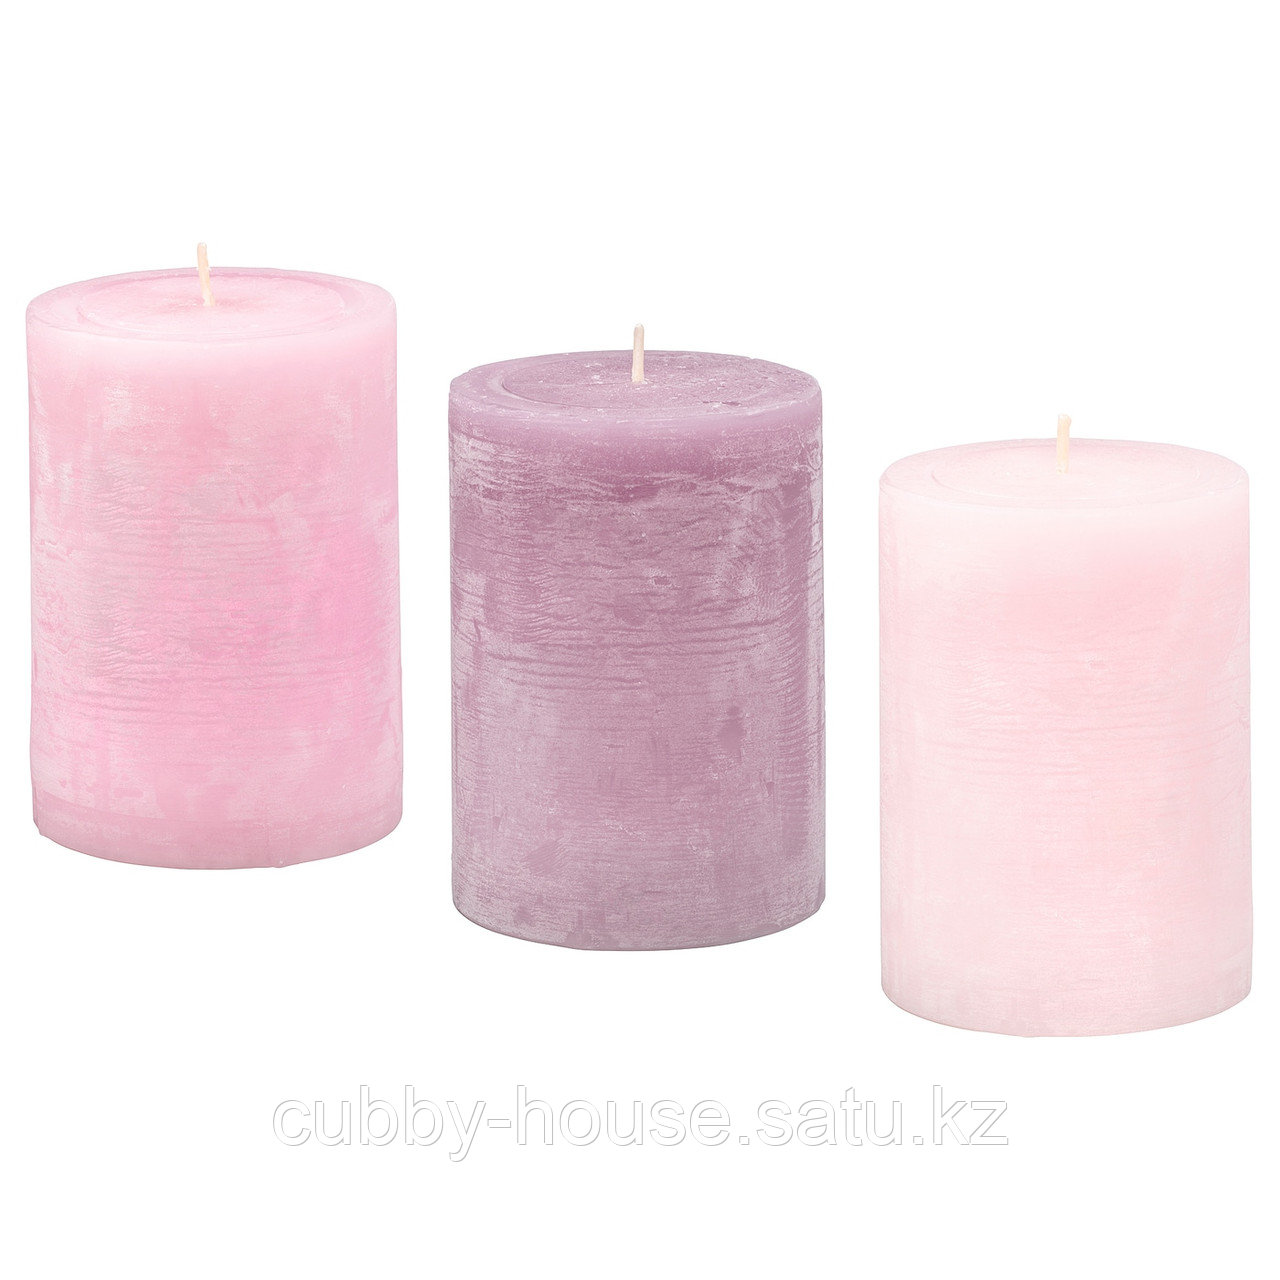 ЛУГГА Формовая свеча, ароматическая, Цветение розовый, 10 см